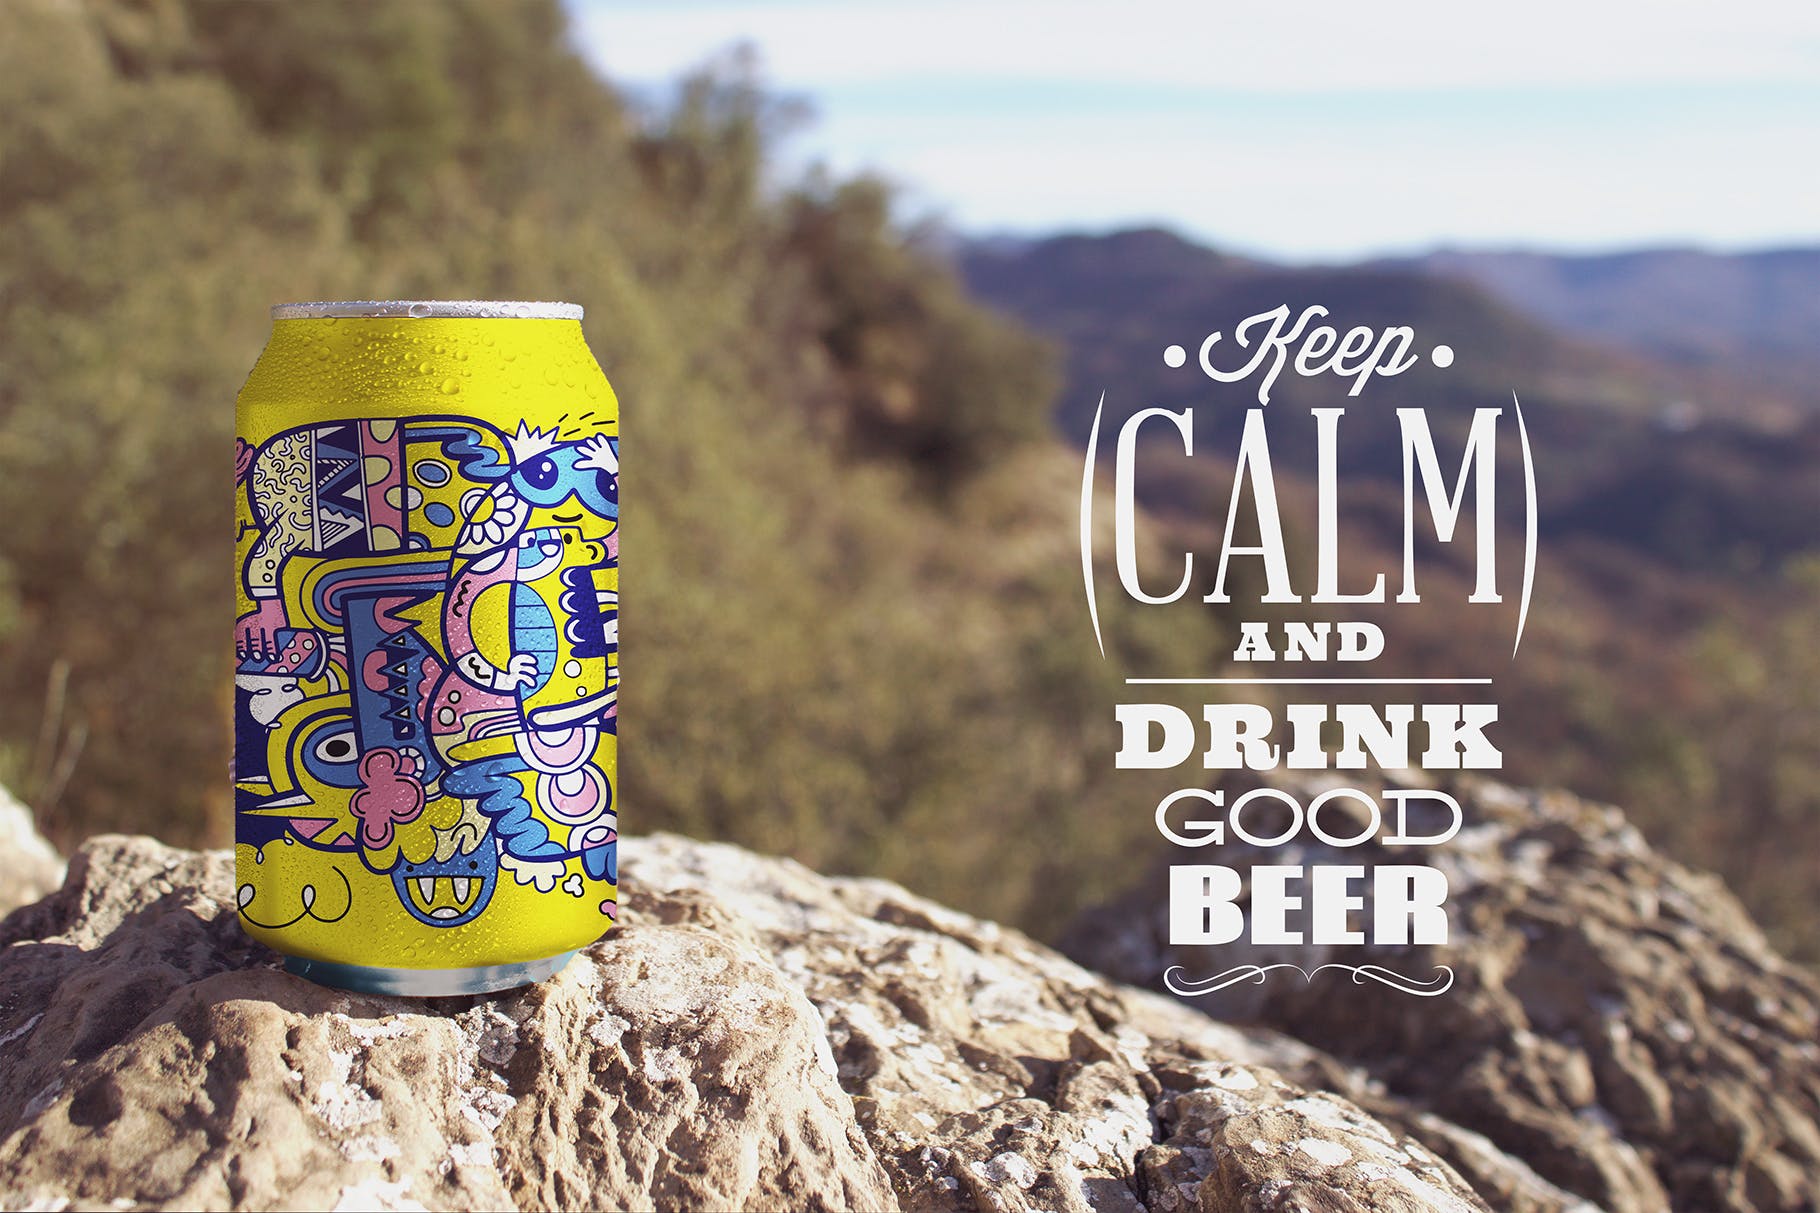 野外岩石场景啤酒易拉罐设计效果图第一素材精选 Nature Beer Can Mockup插图(3)